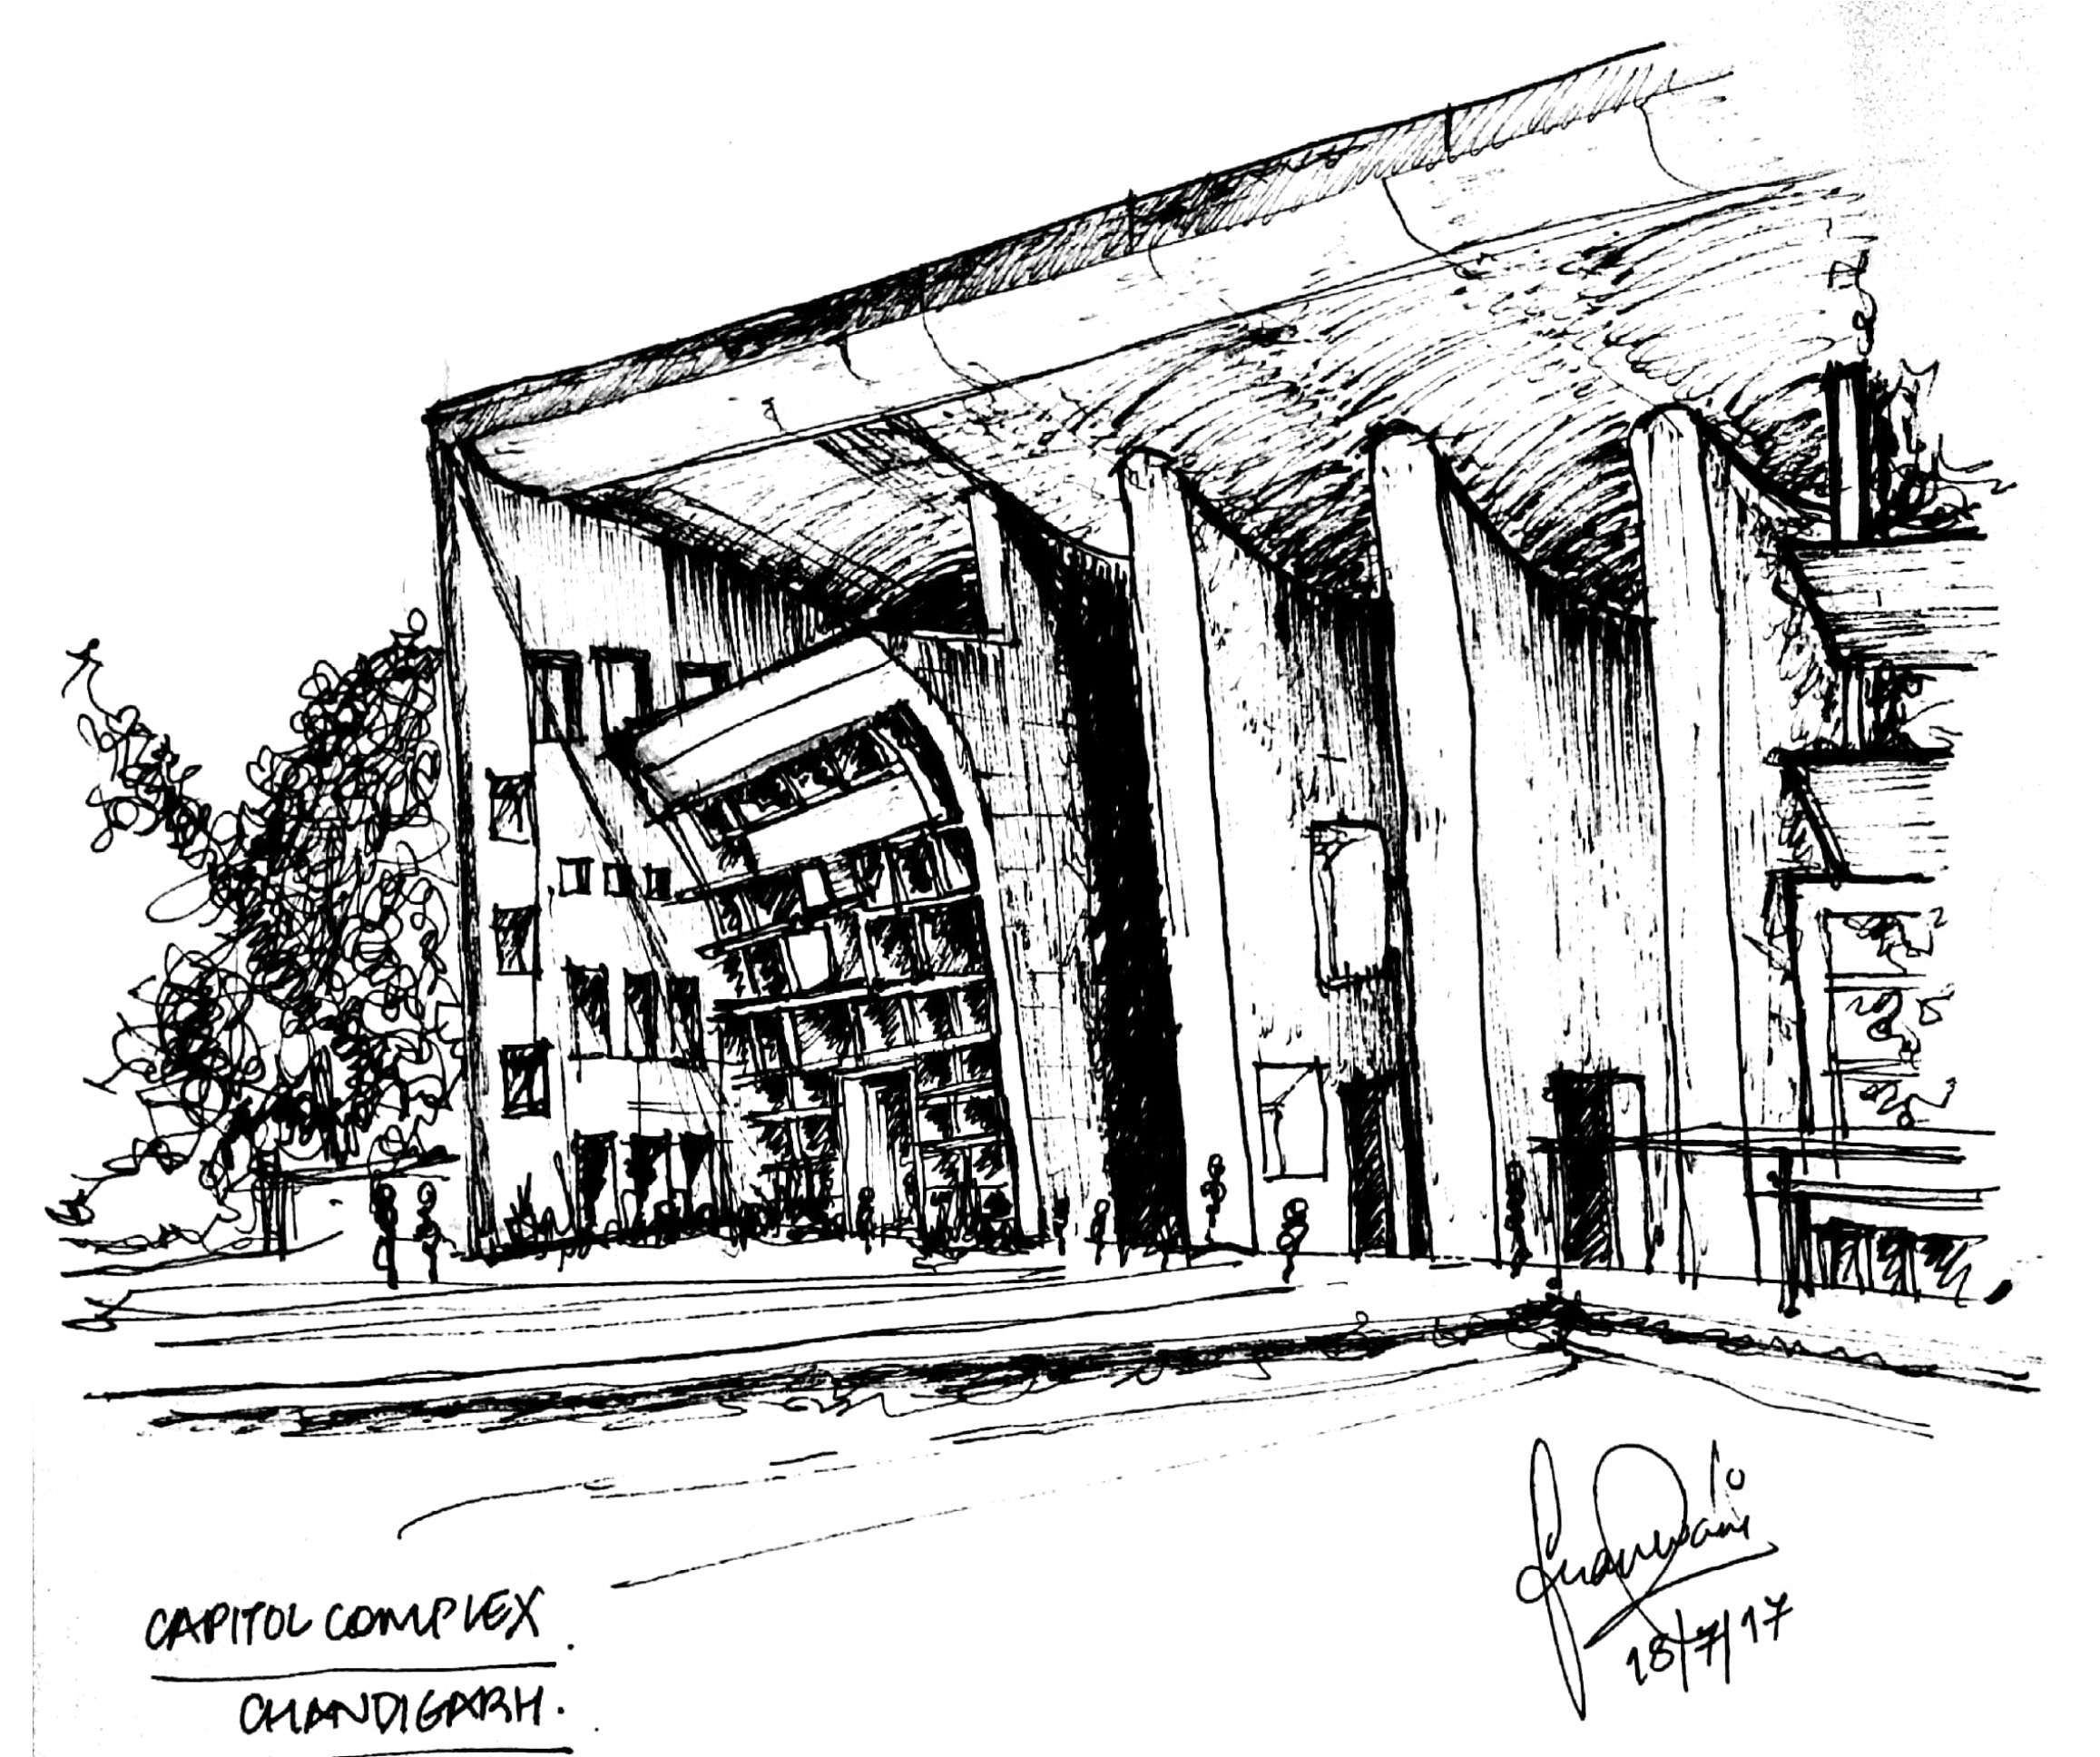 Complexe du Capitole - Le Corbusier - World Heritage